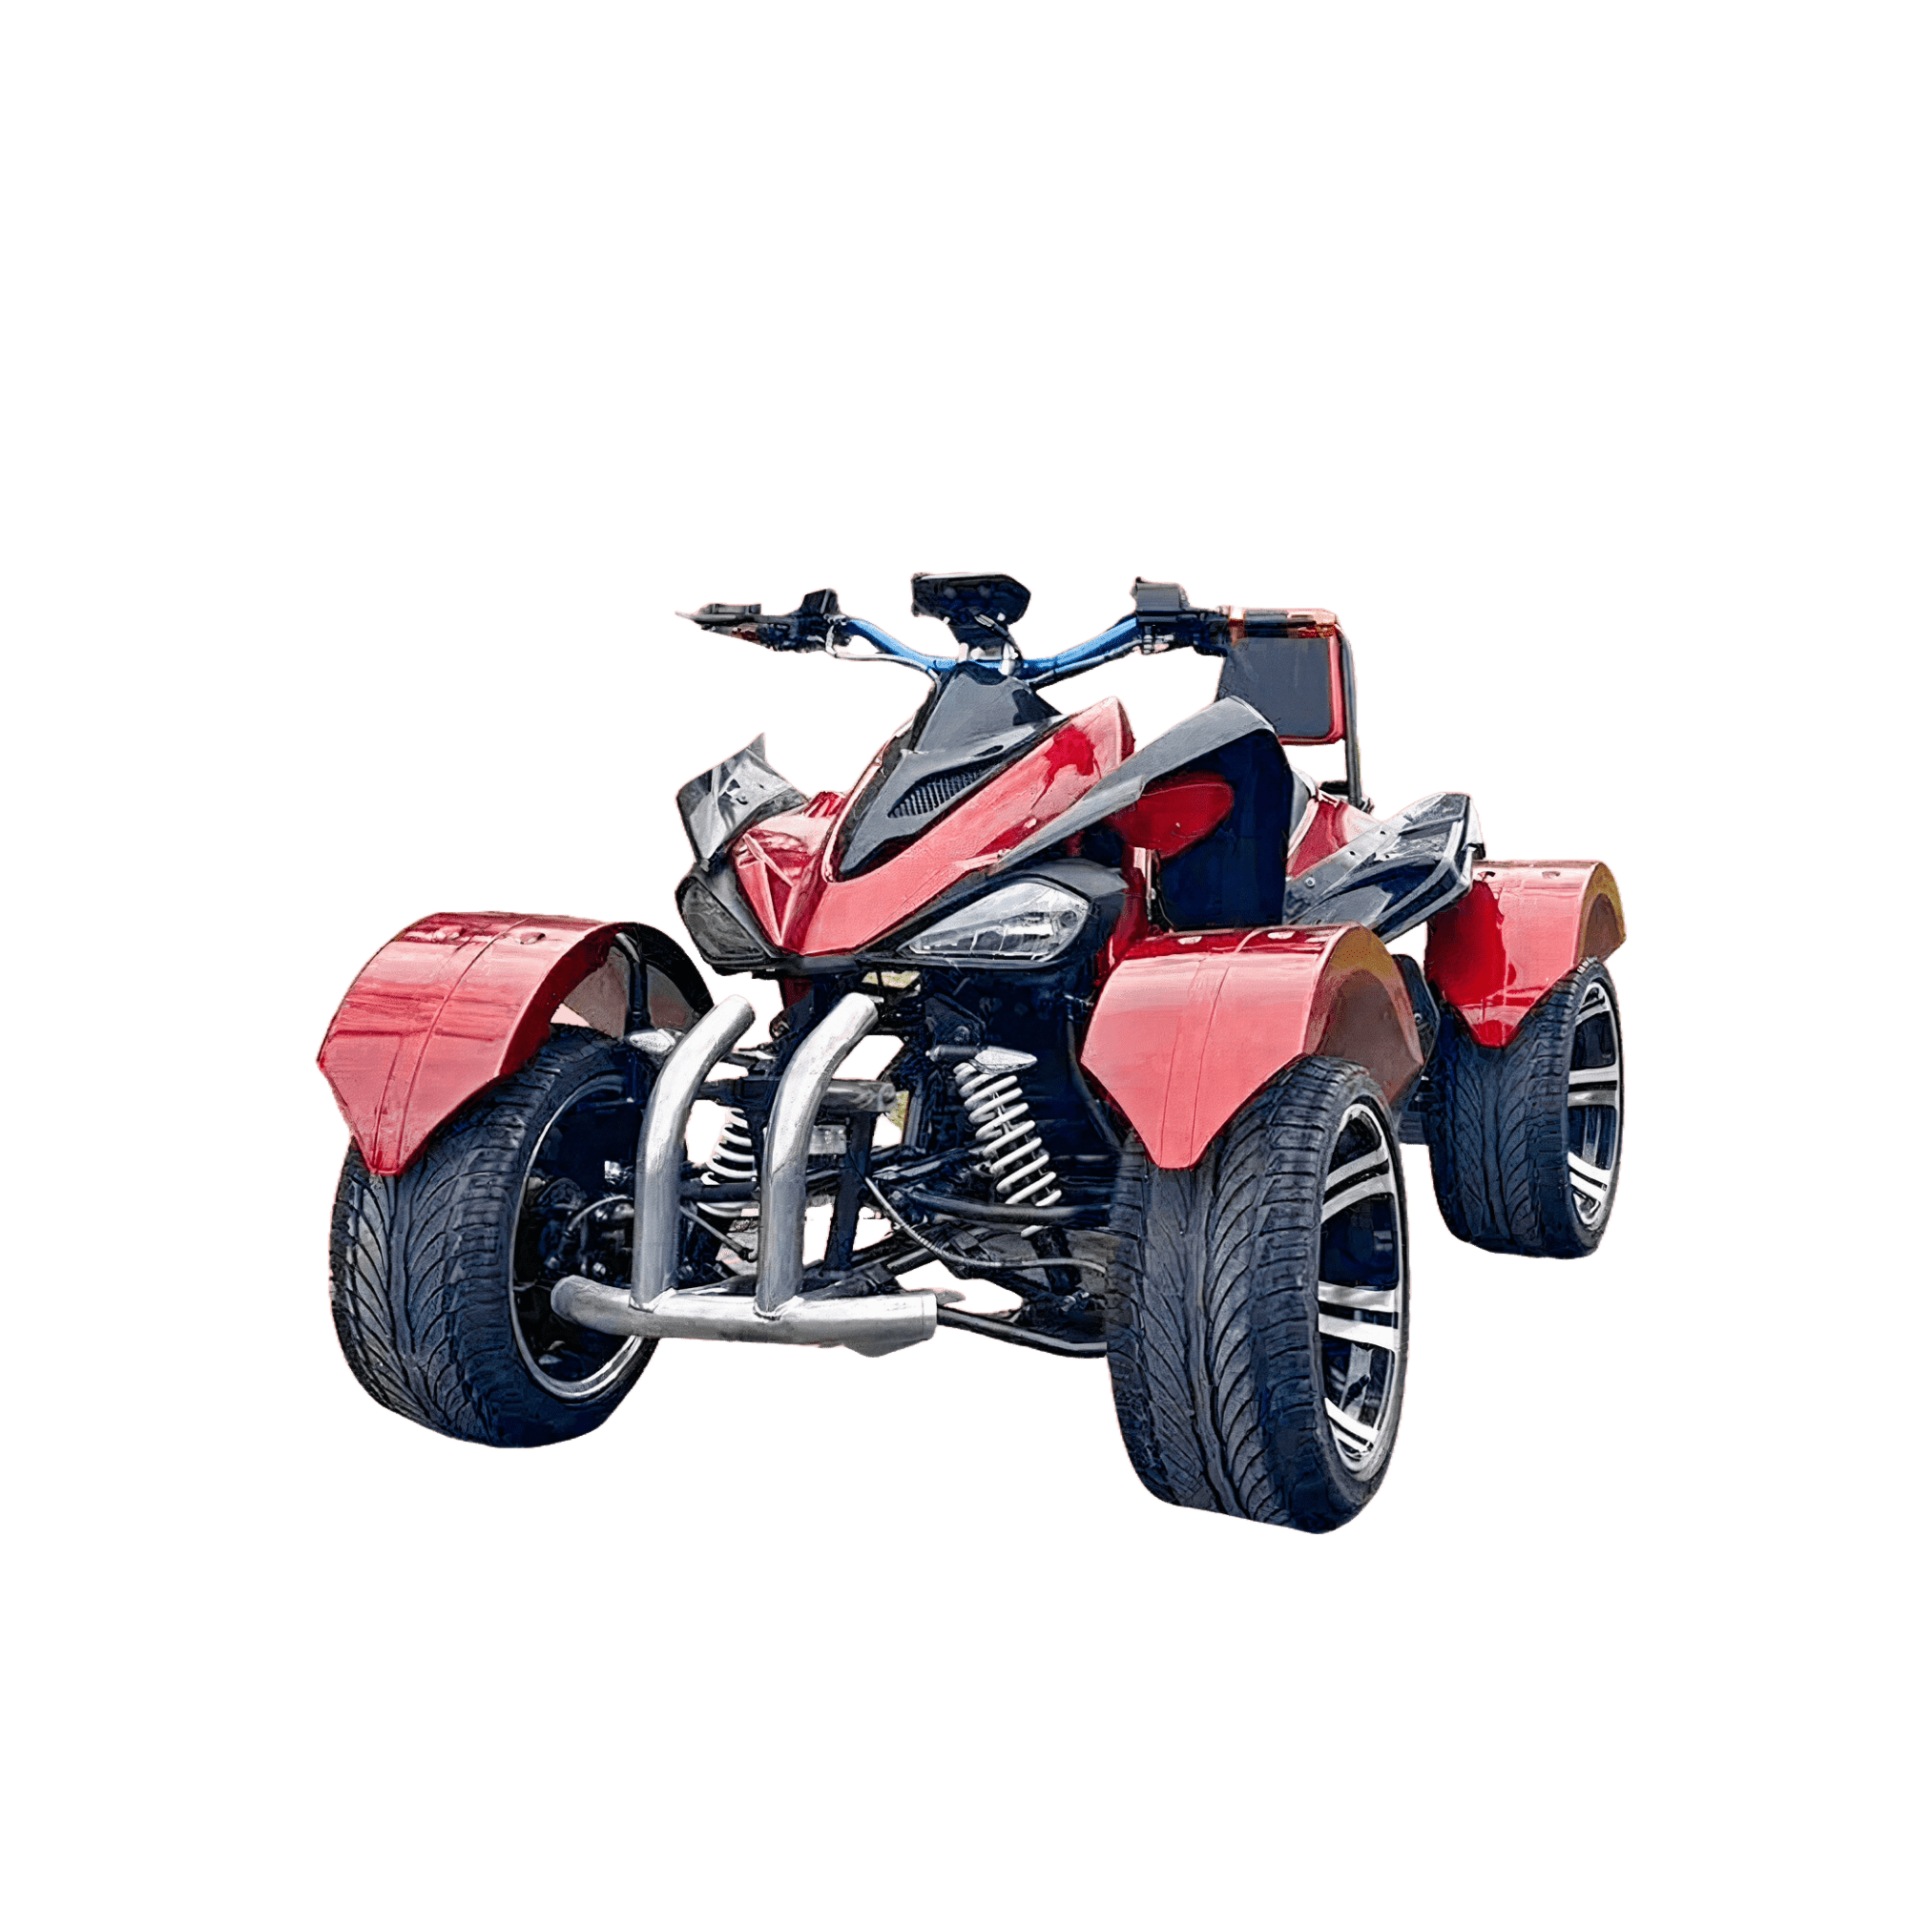 SPY F3-250 ELECTRIC ATV - ScootiBoo